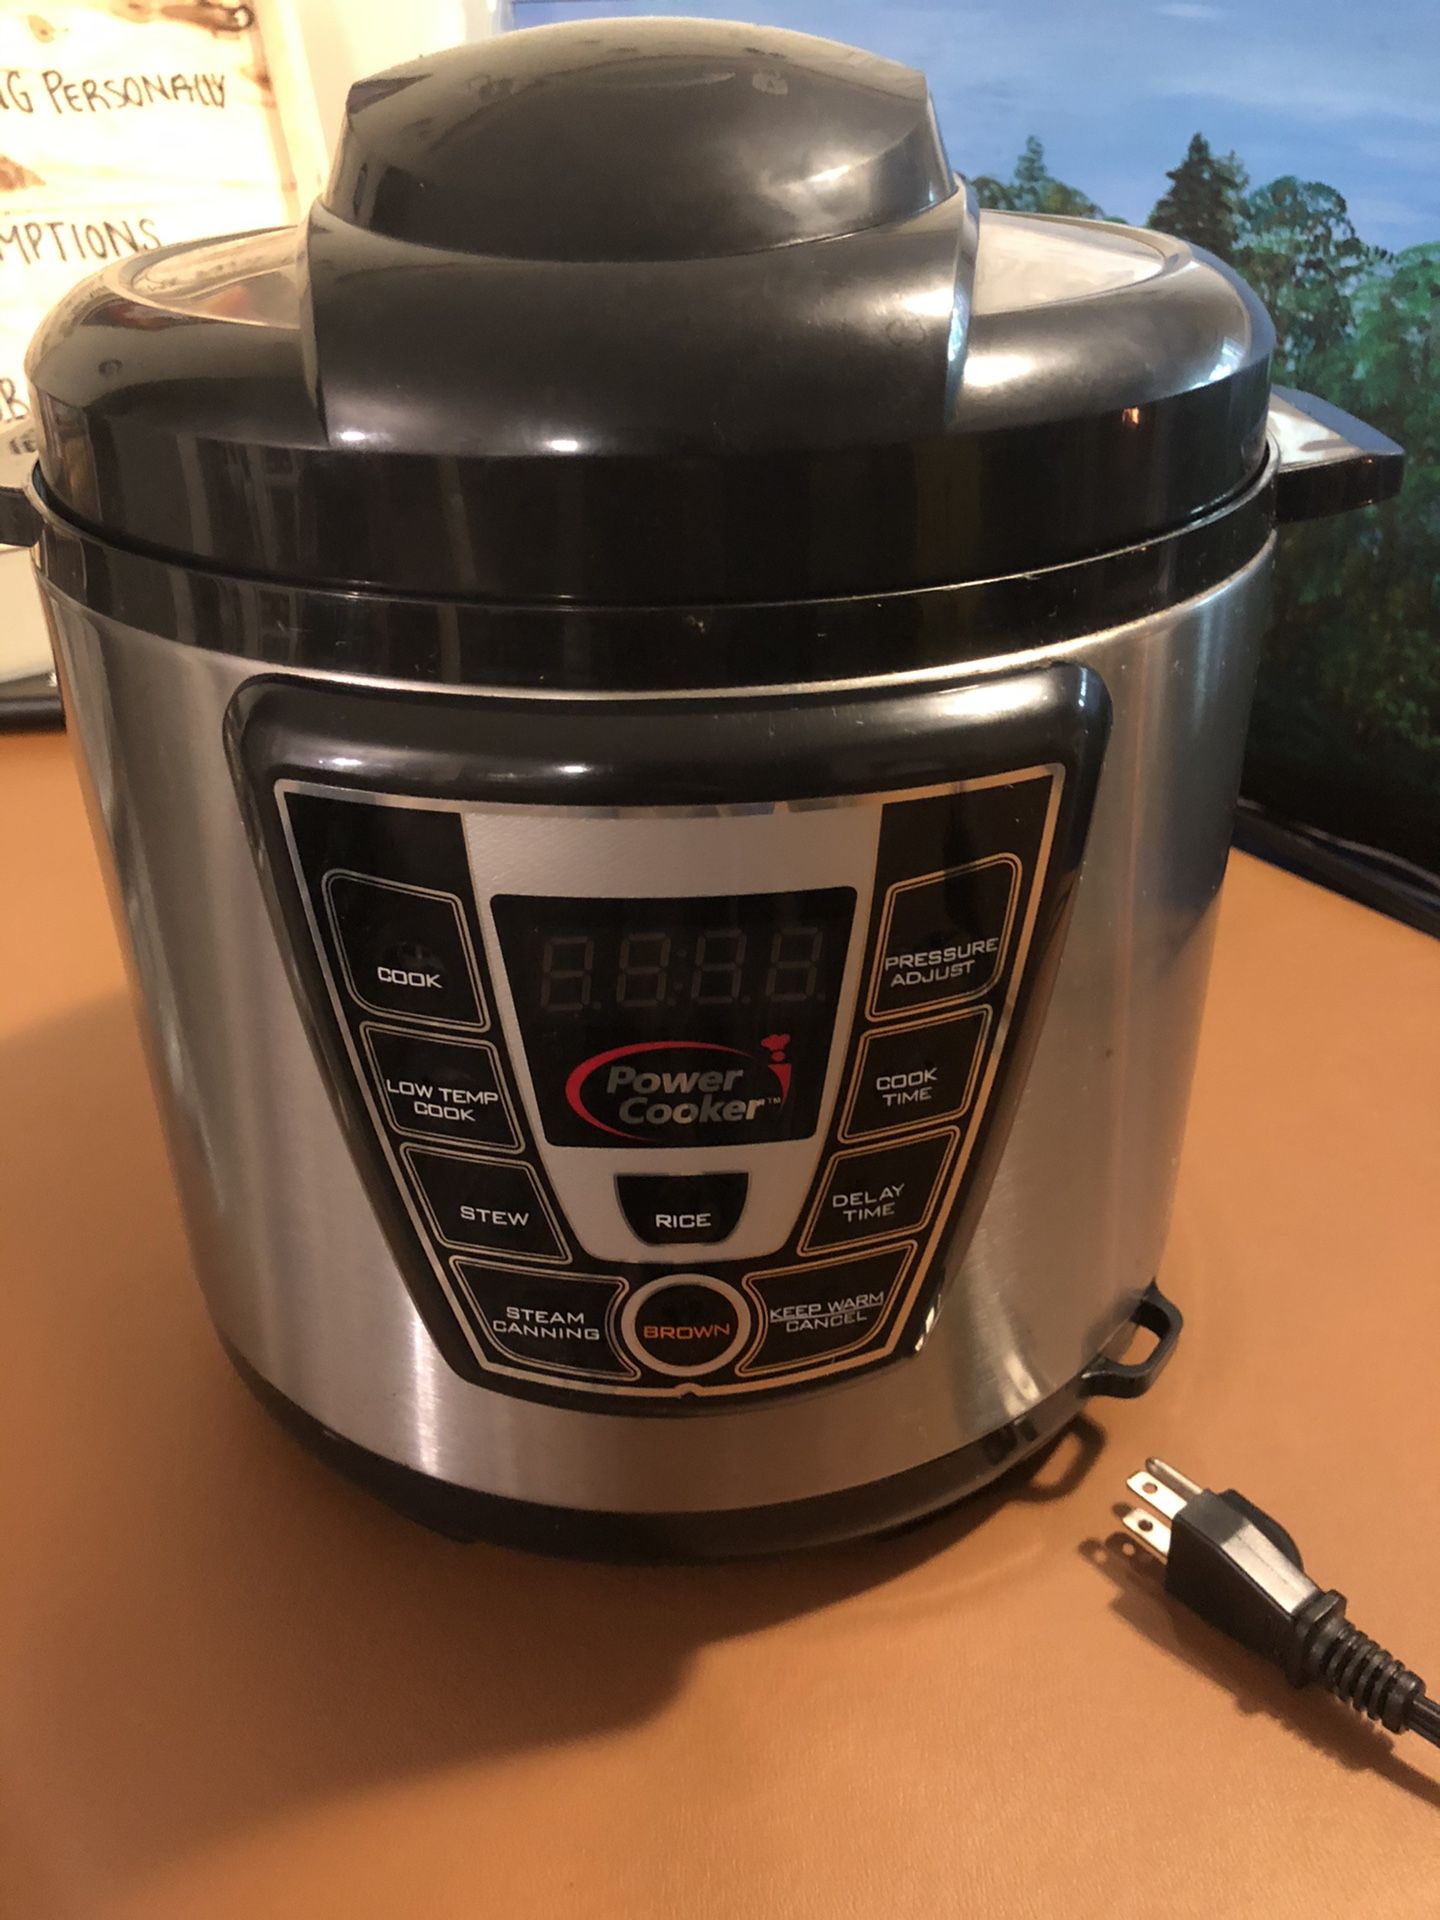 Pressure cooker / crock pot